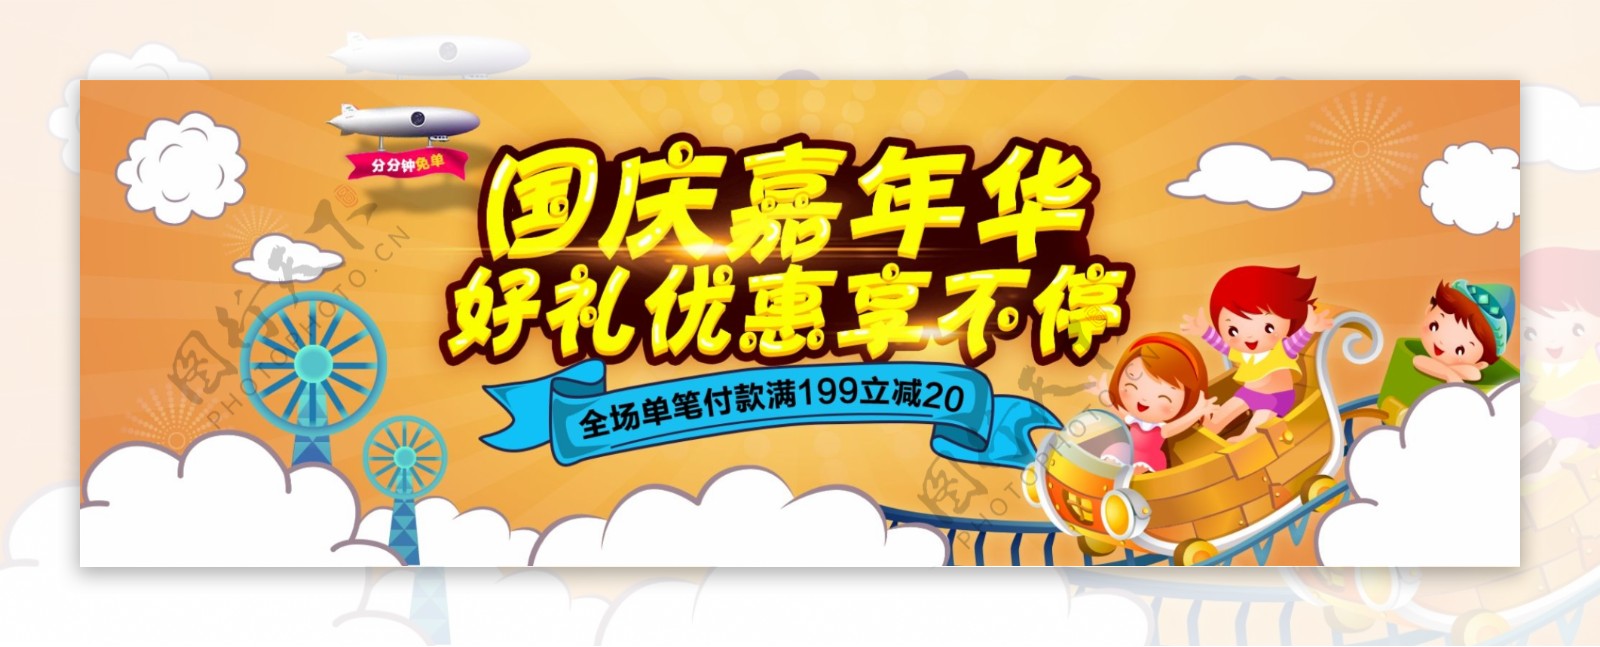 橙色热闹游乐园十一国庆嘉年华电商淘宝海报banner